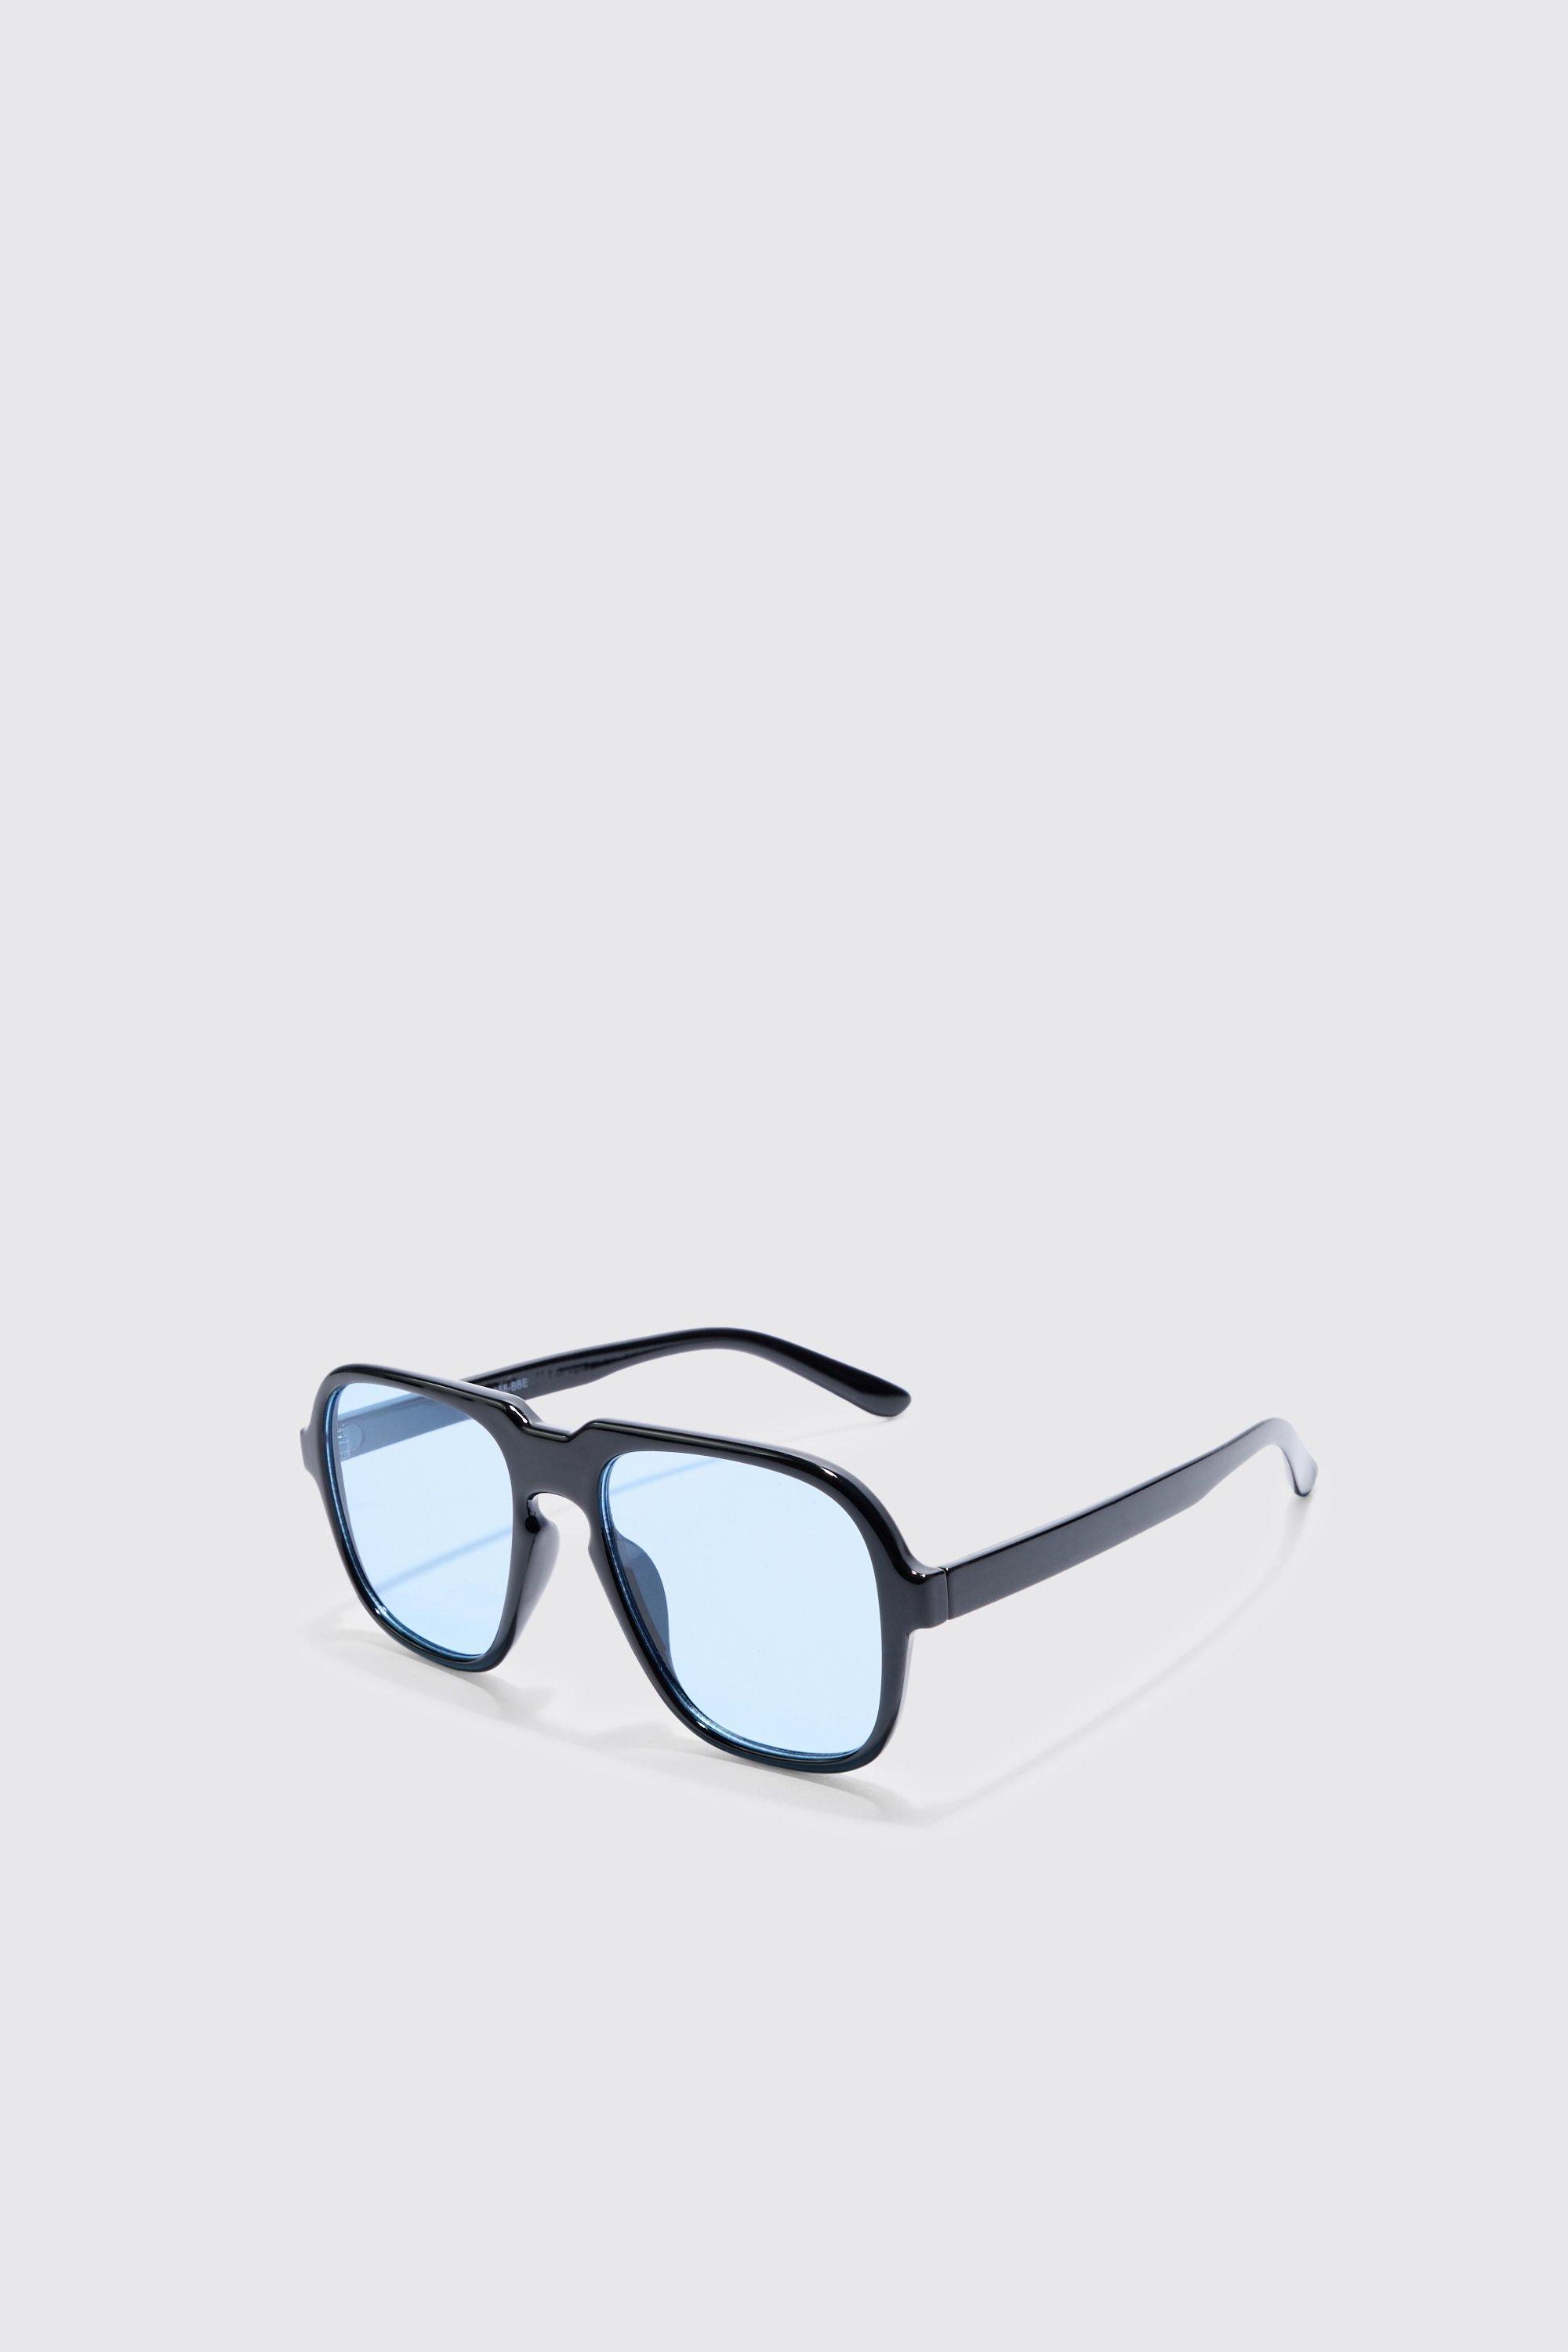 Image of Retro High Brow Sunglasses With Blue Lens, Nero